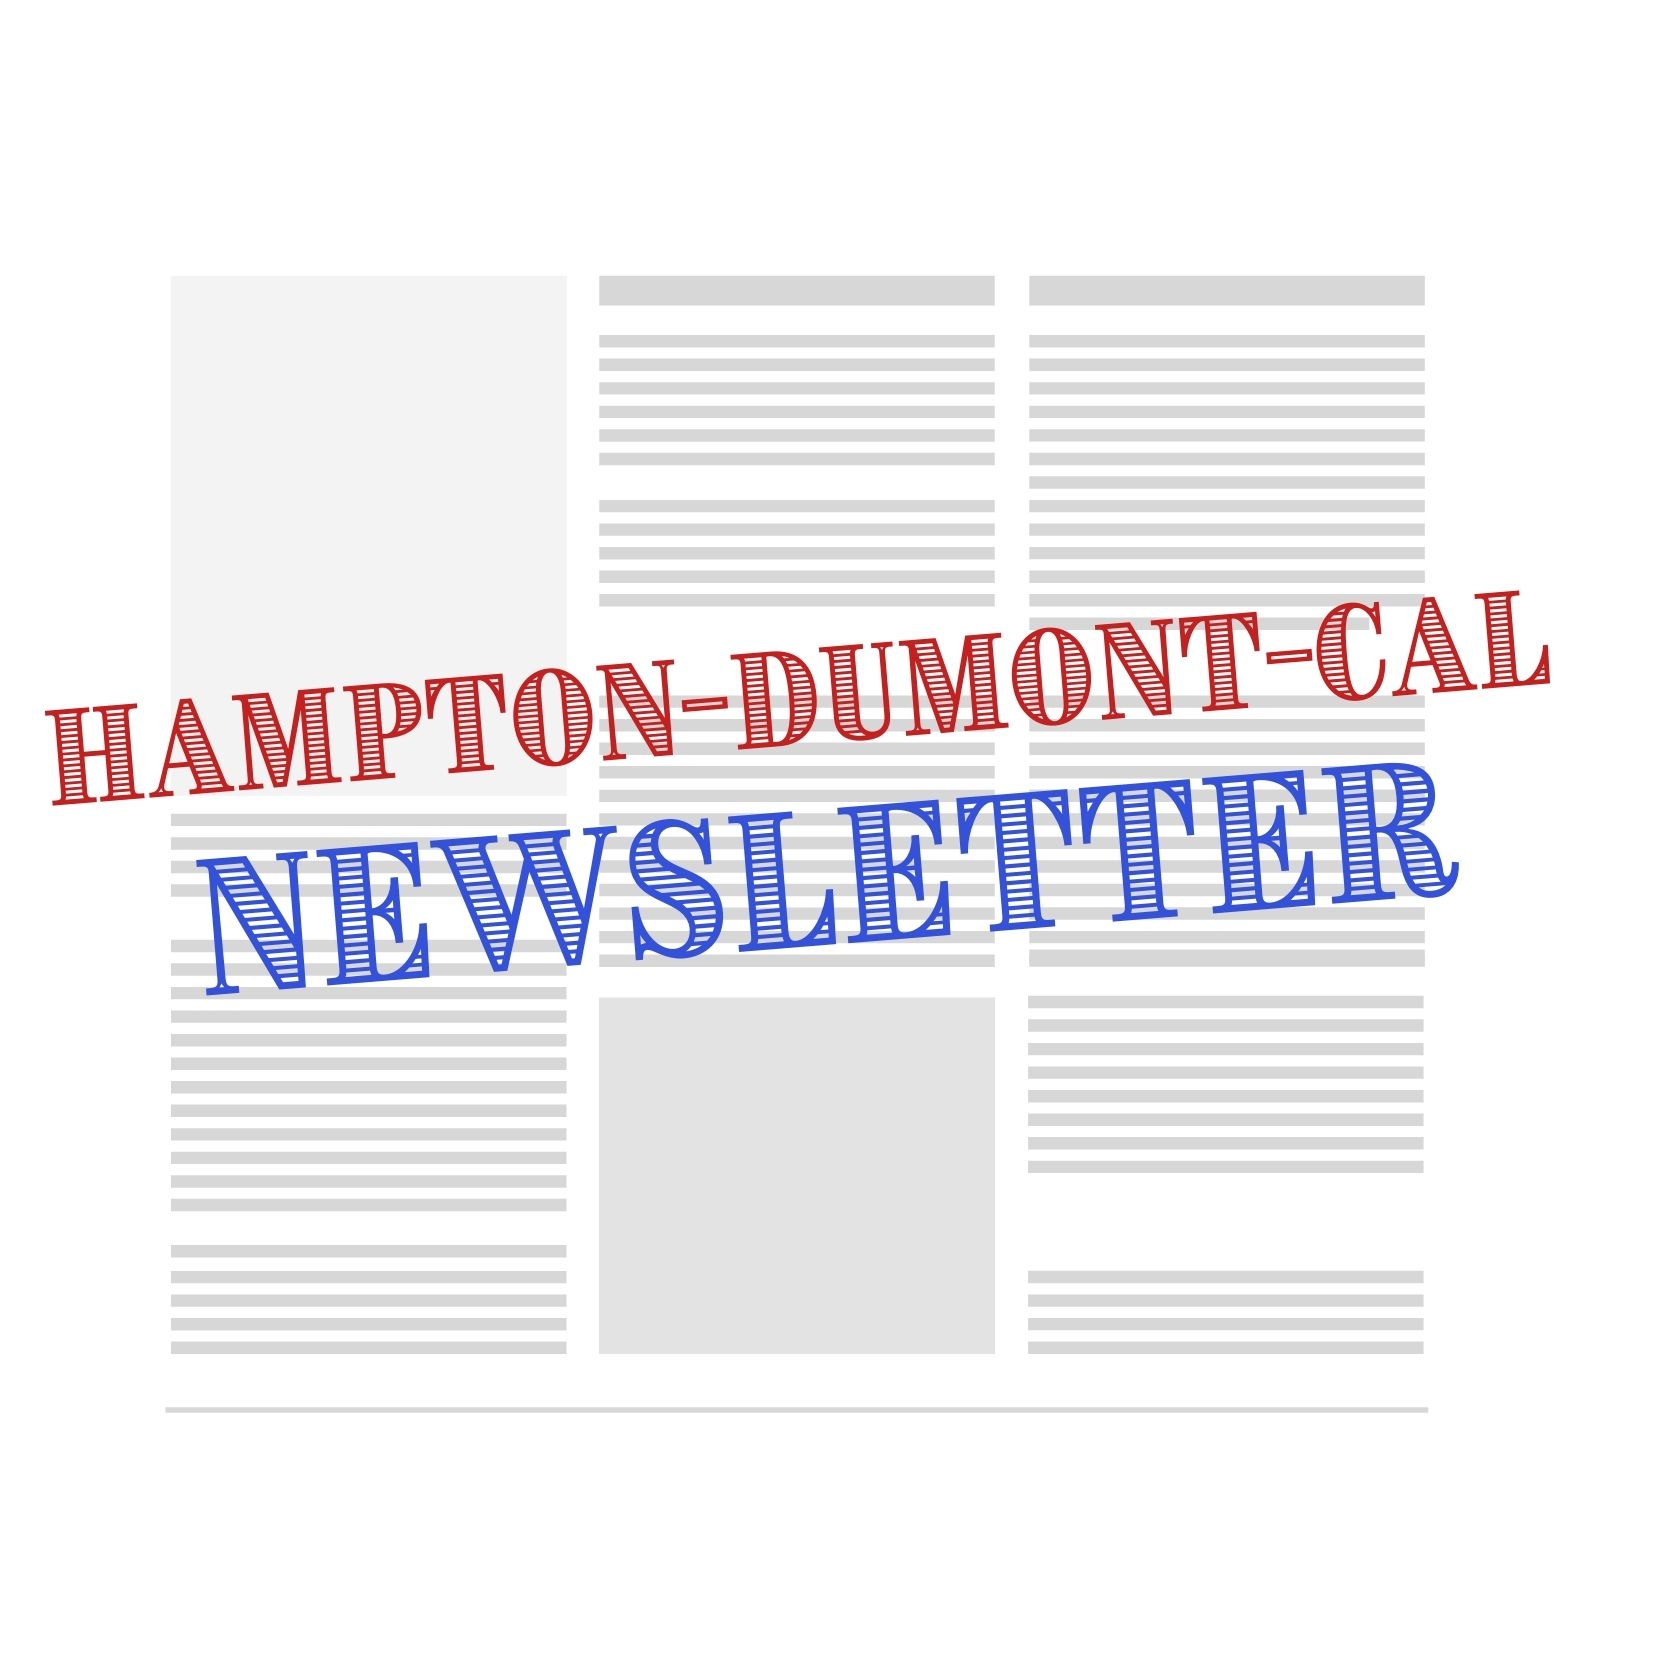 Hampton-Dumont-CAL Newsletter